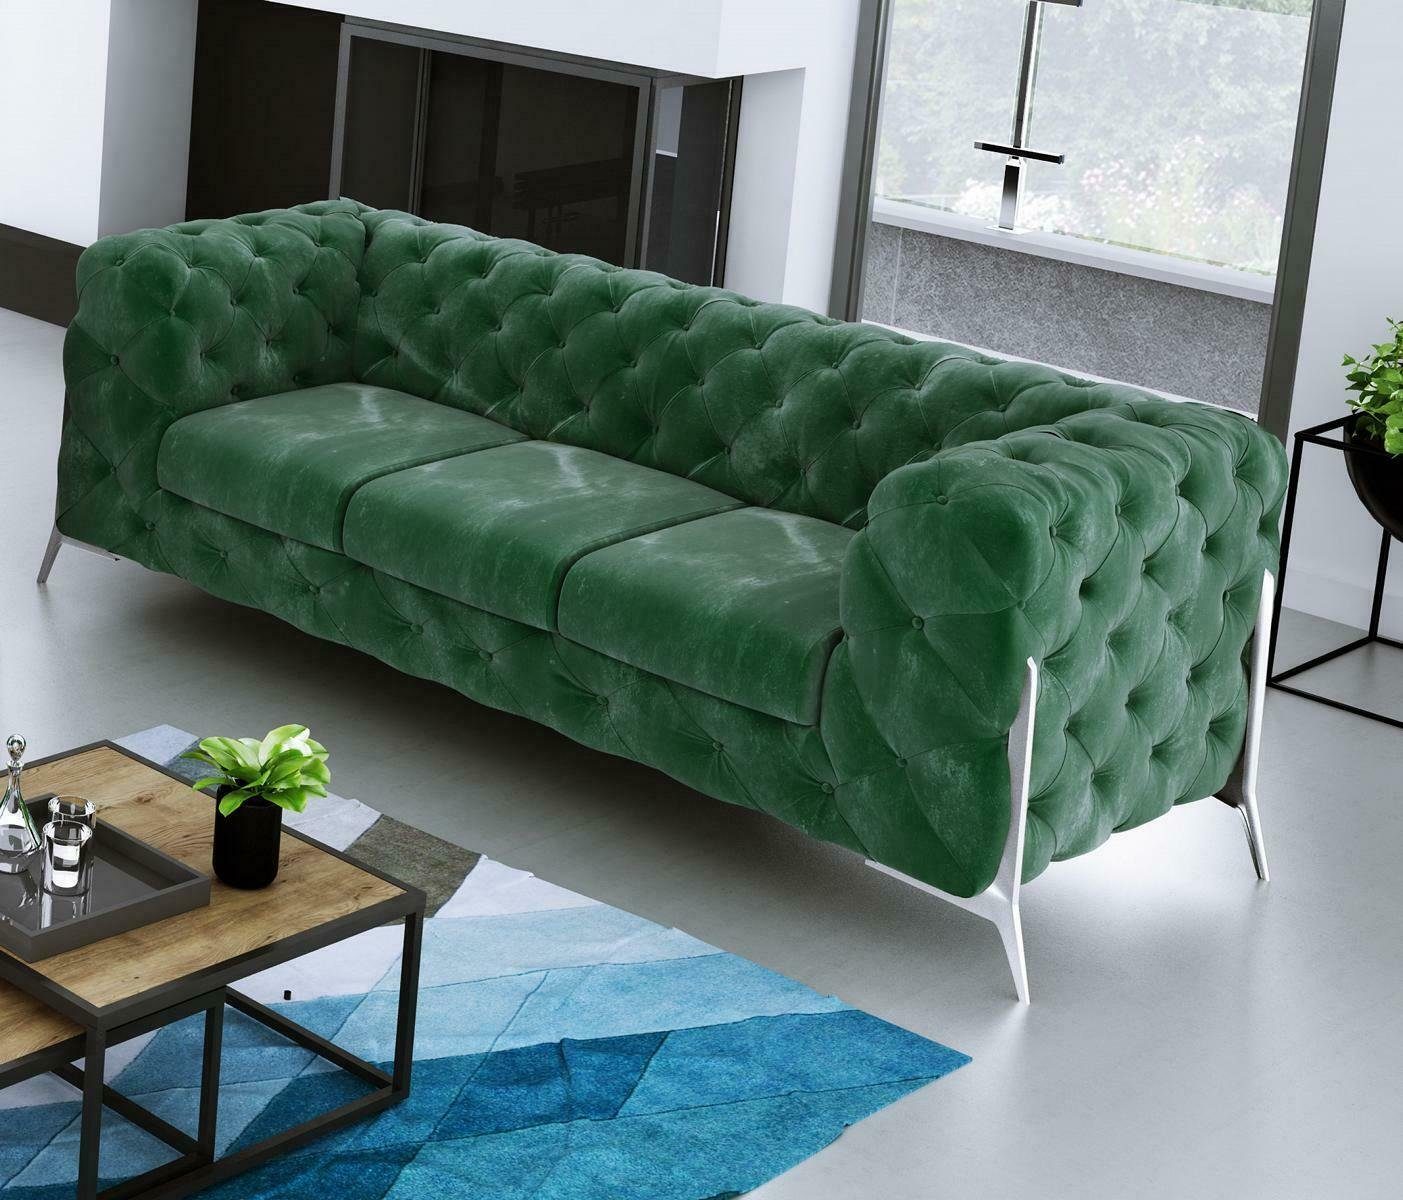 JVmoebel Sofa Moderner Brauner Chesterfield Dreisitzer Luxus Polster Couch  Neu, Made in Europe